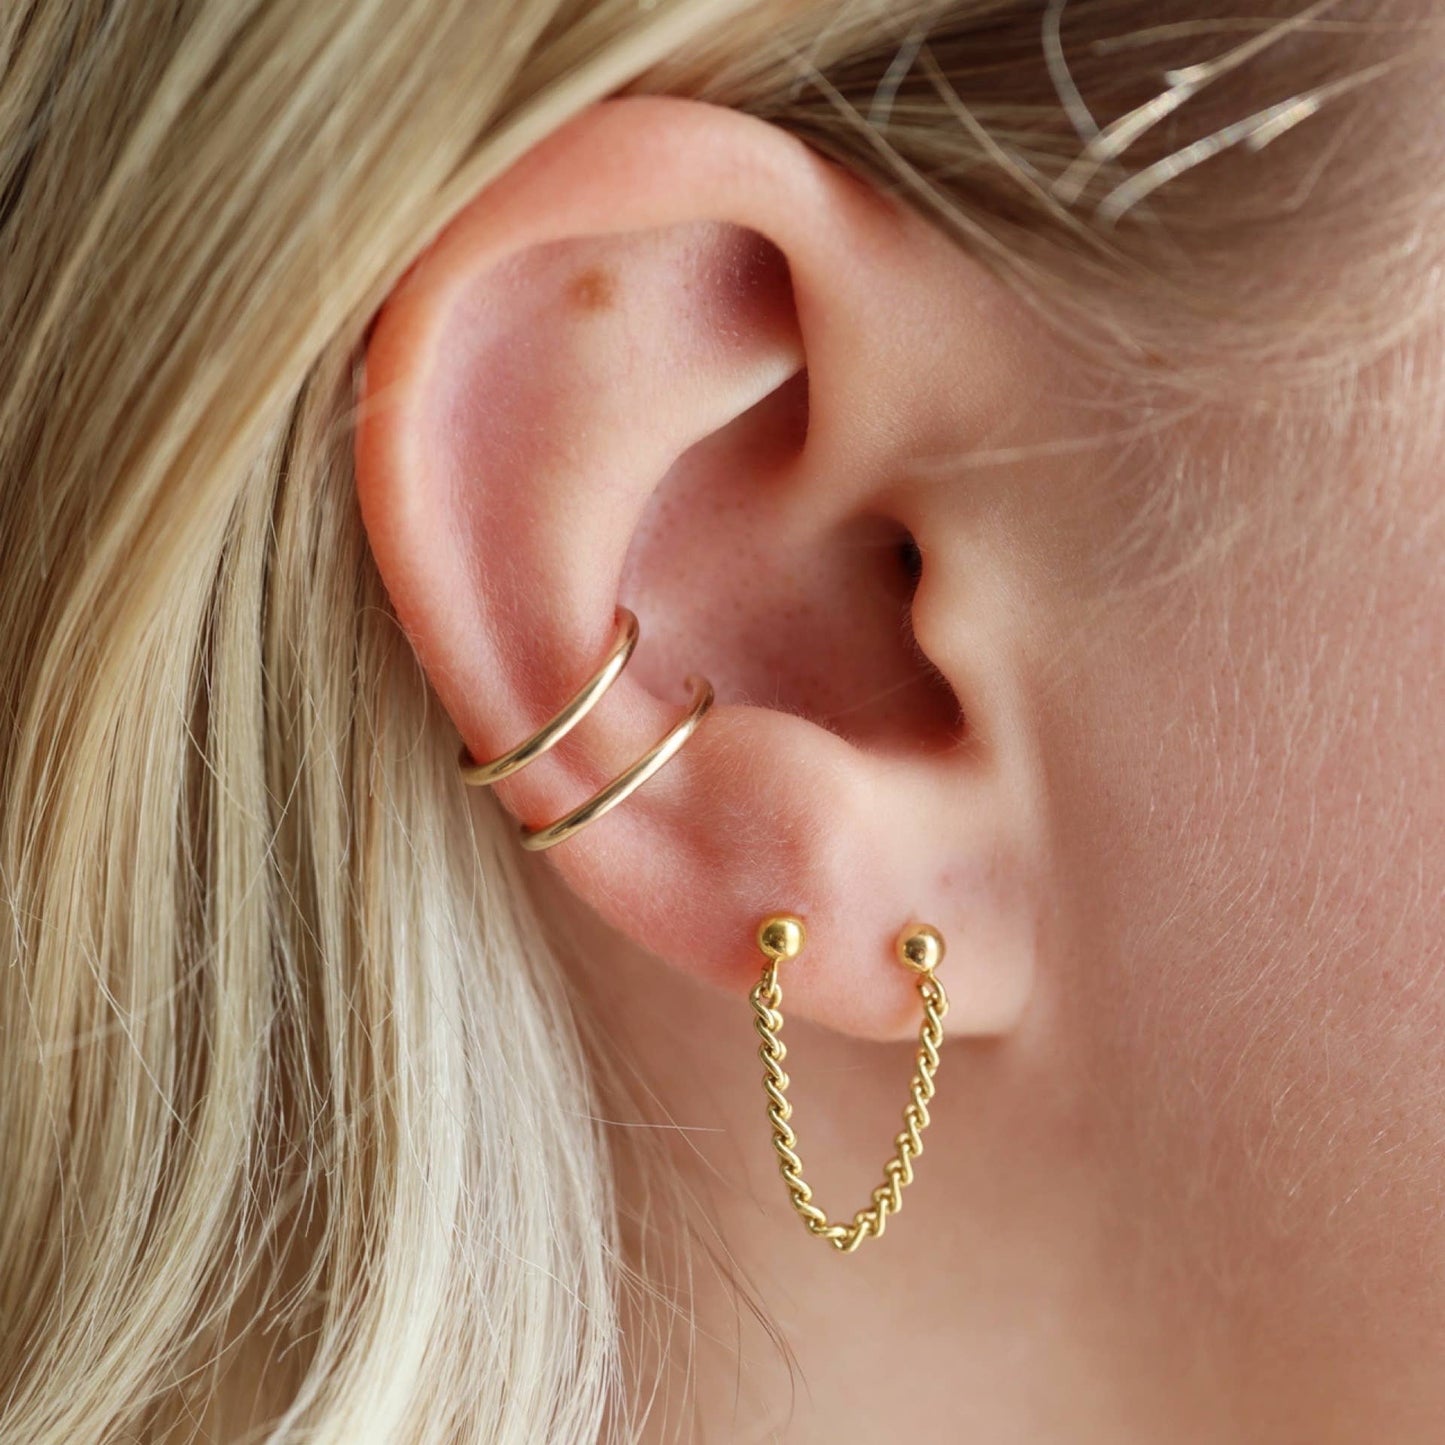 Token Jewelry - Double Wrap Ear Cuff: Sterling Silver